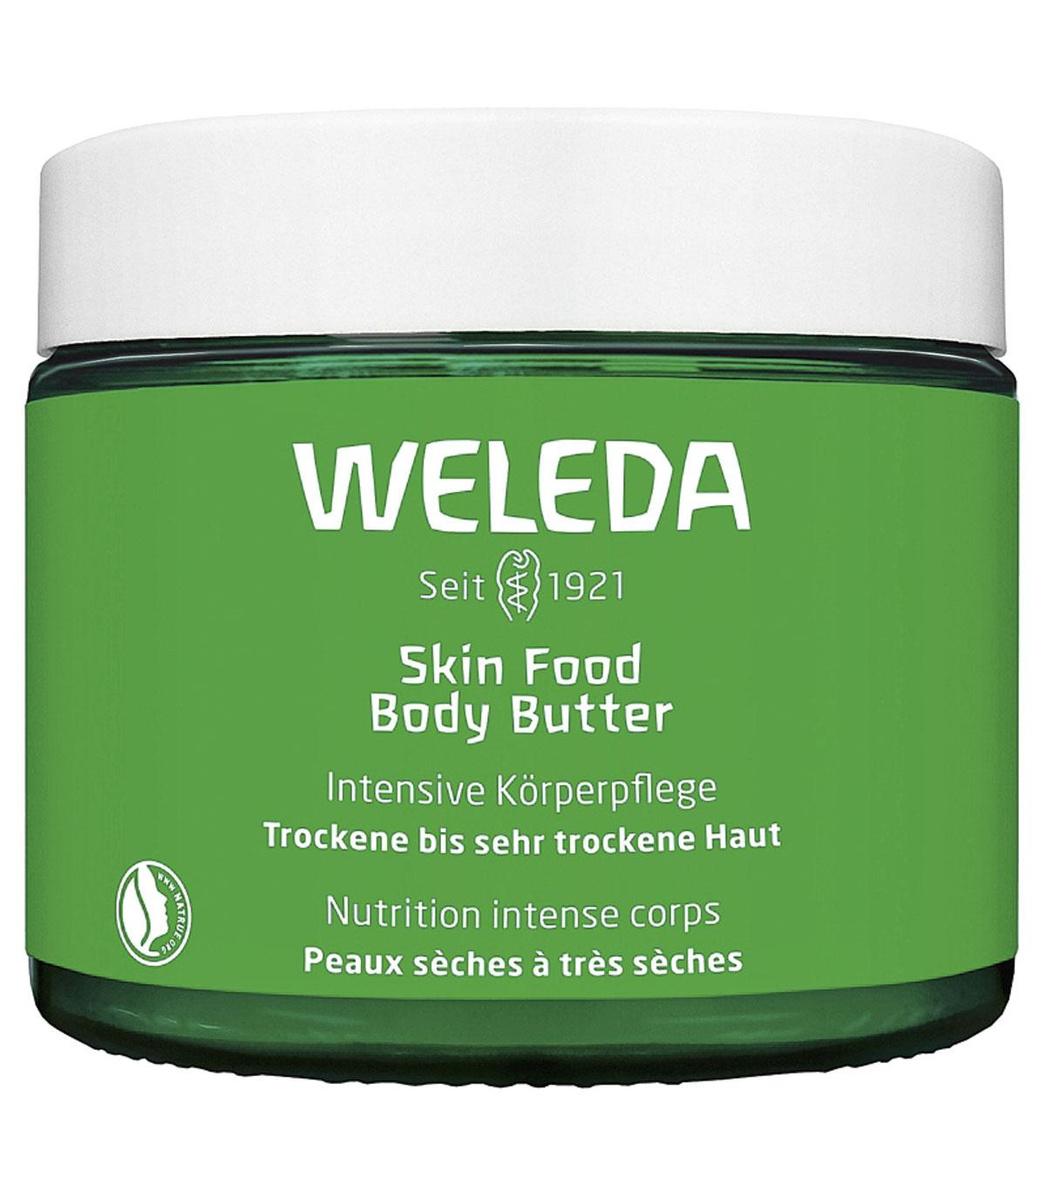 Bereid je huid voor op de eerste zonnestralen. Skin Food Body Butter Intensief Voedende Verzorging van Weleda. 19,99 euro voor 150 ml, in de apotheek, natuurwinkel, op weleda.be